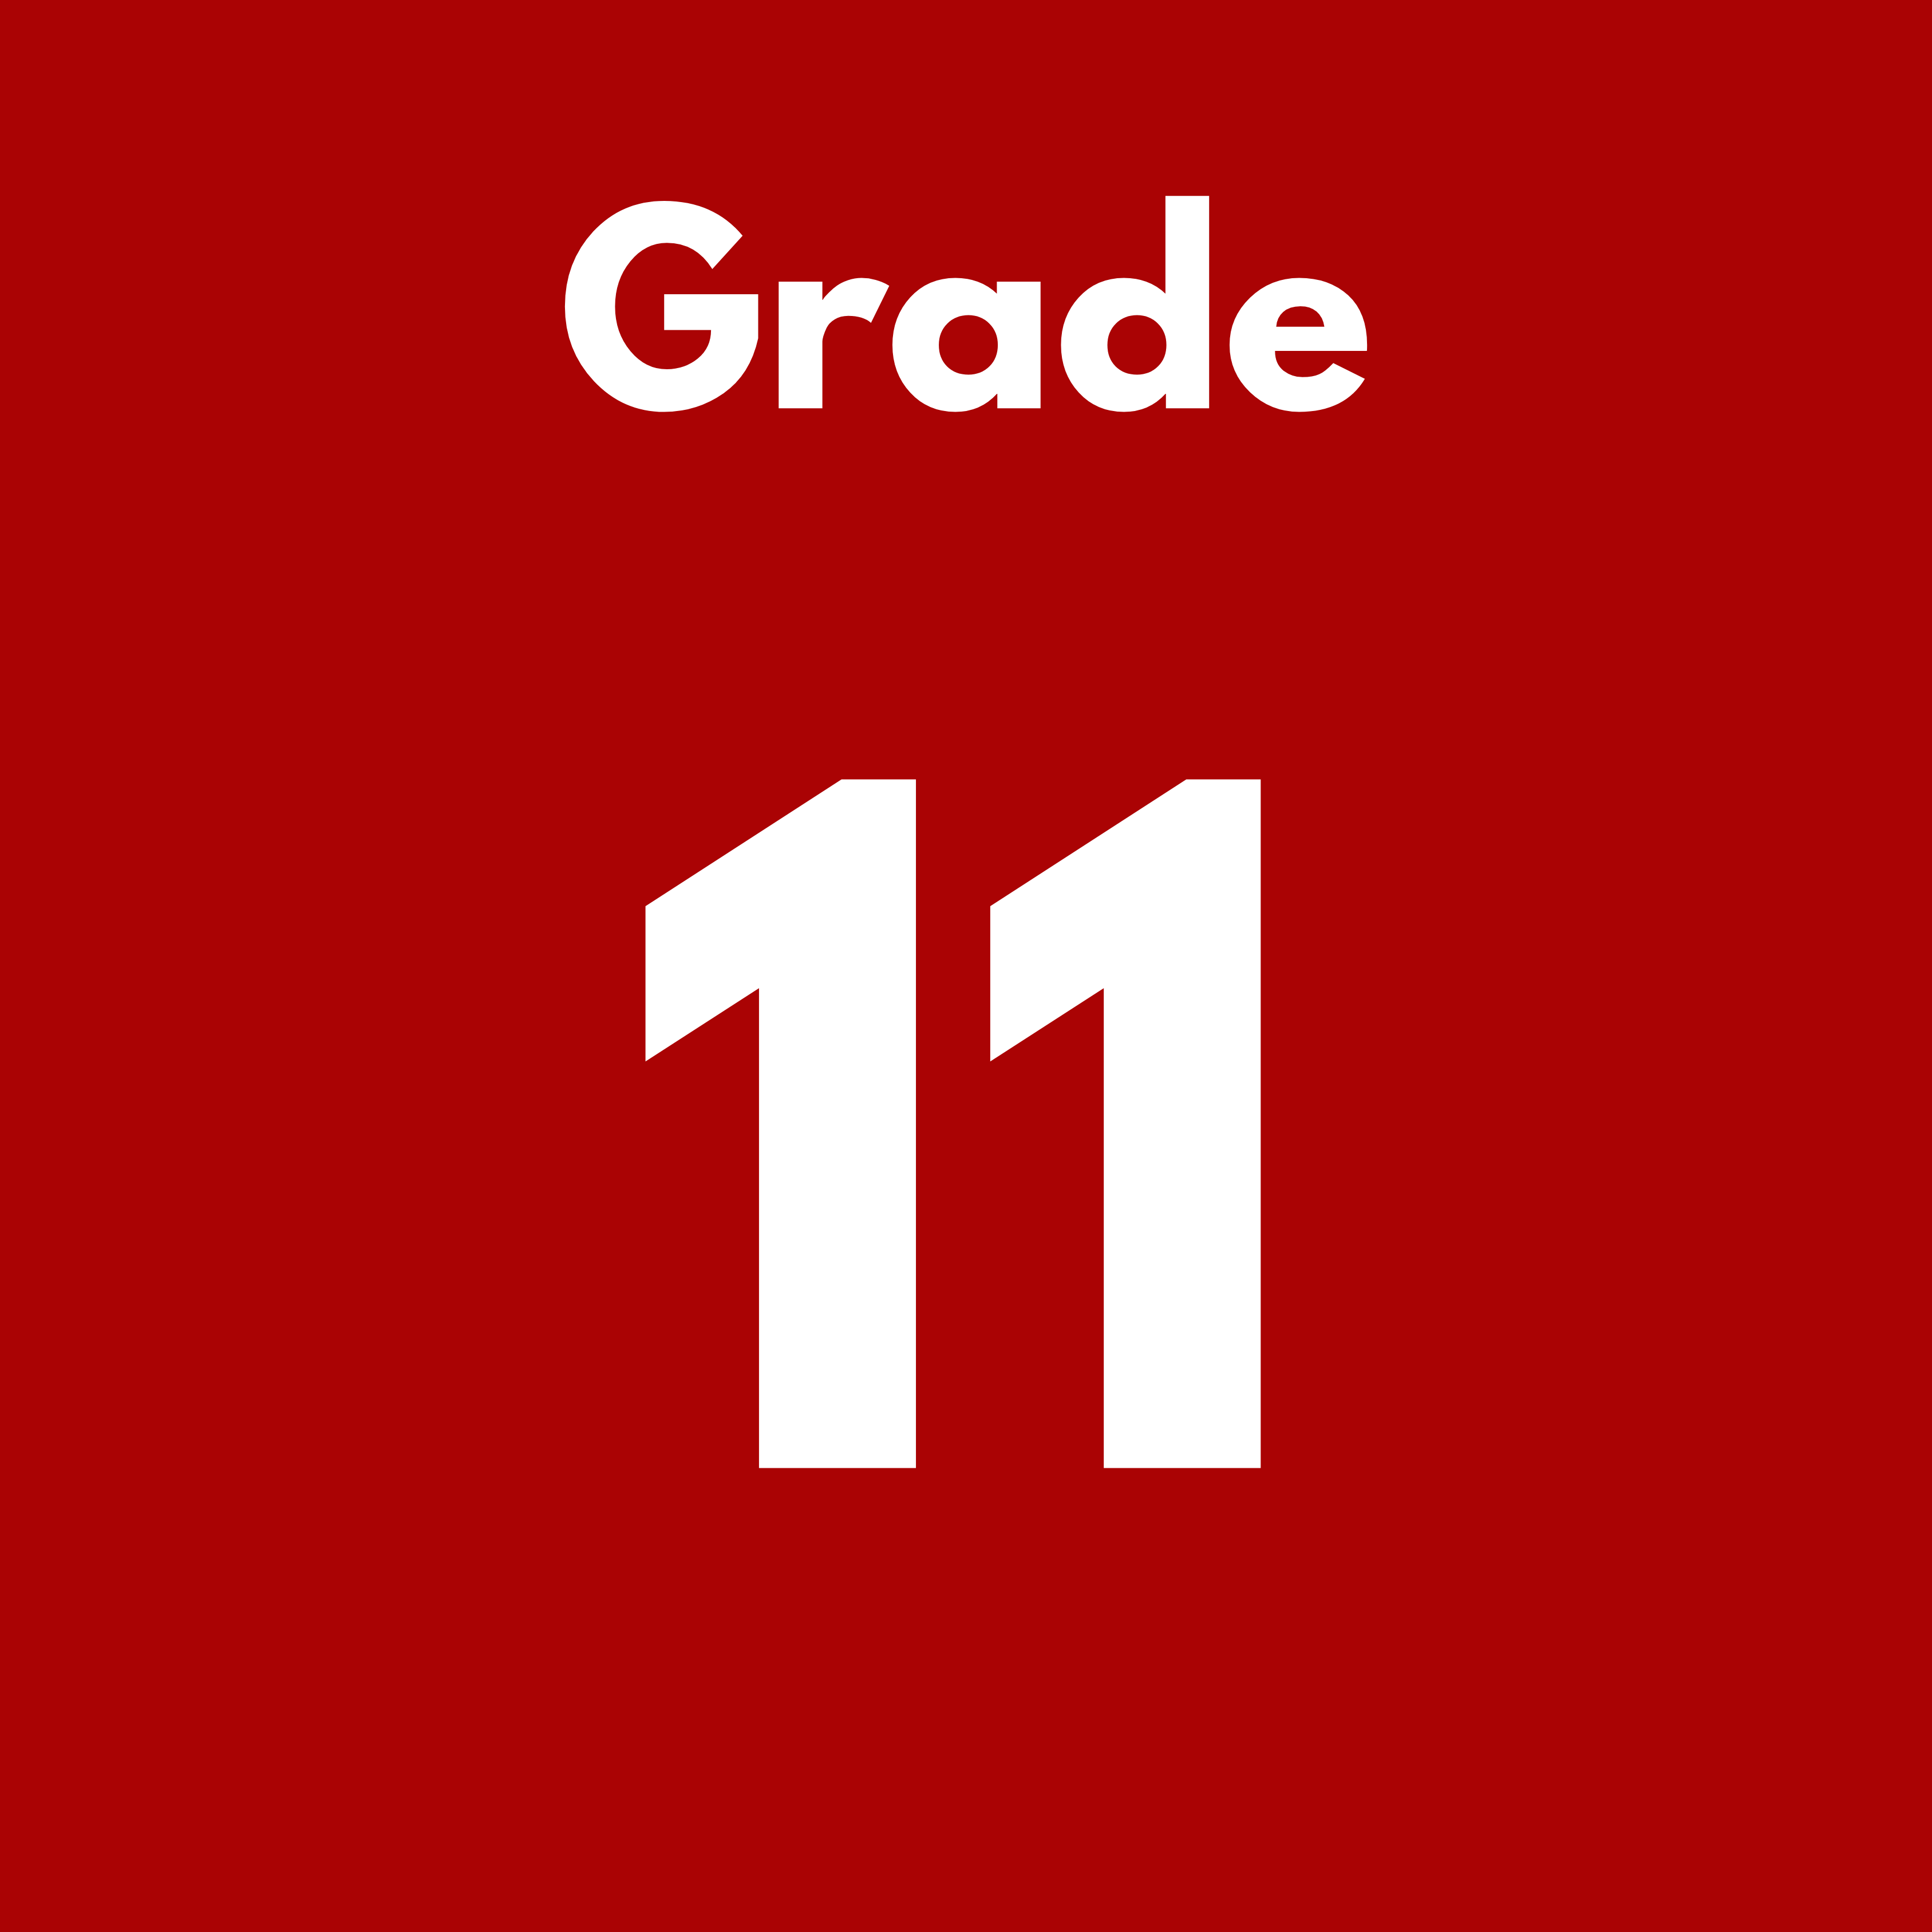 Grade 11